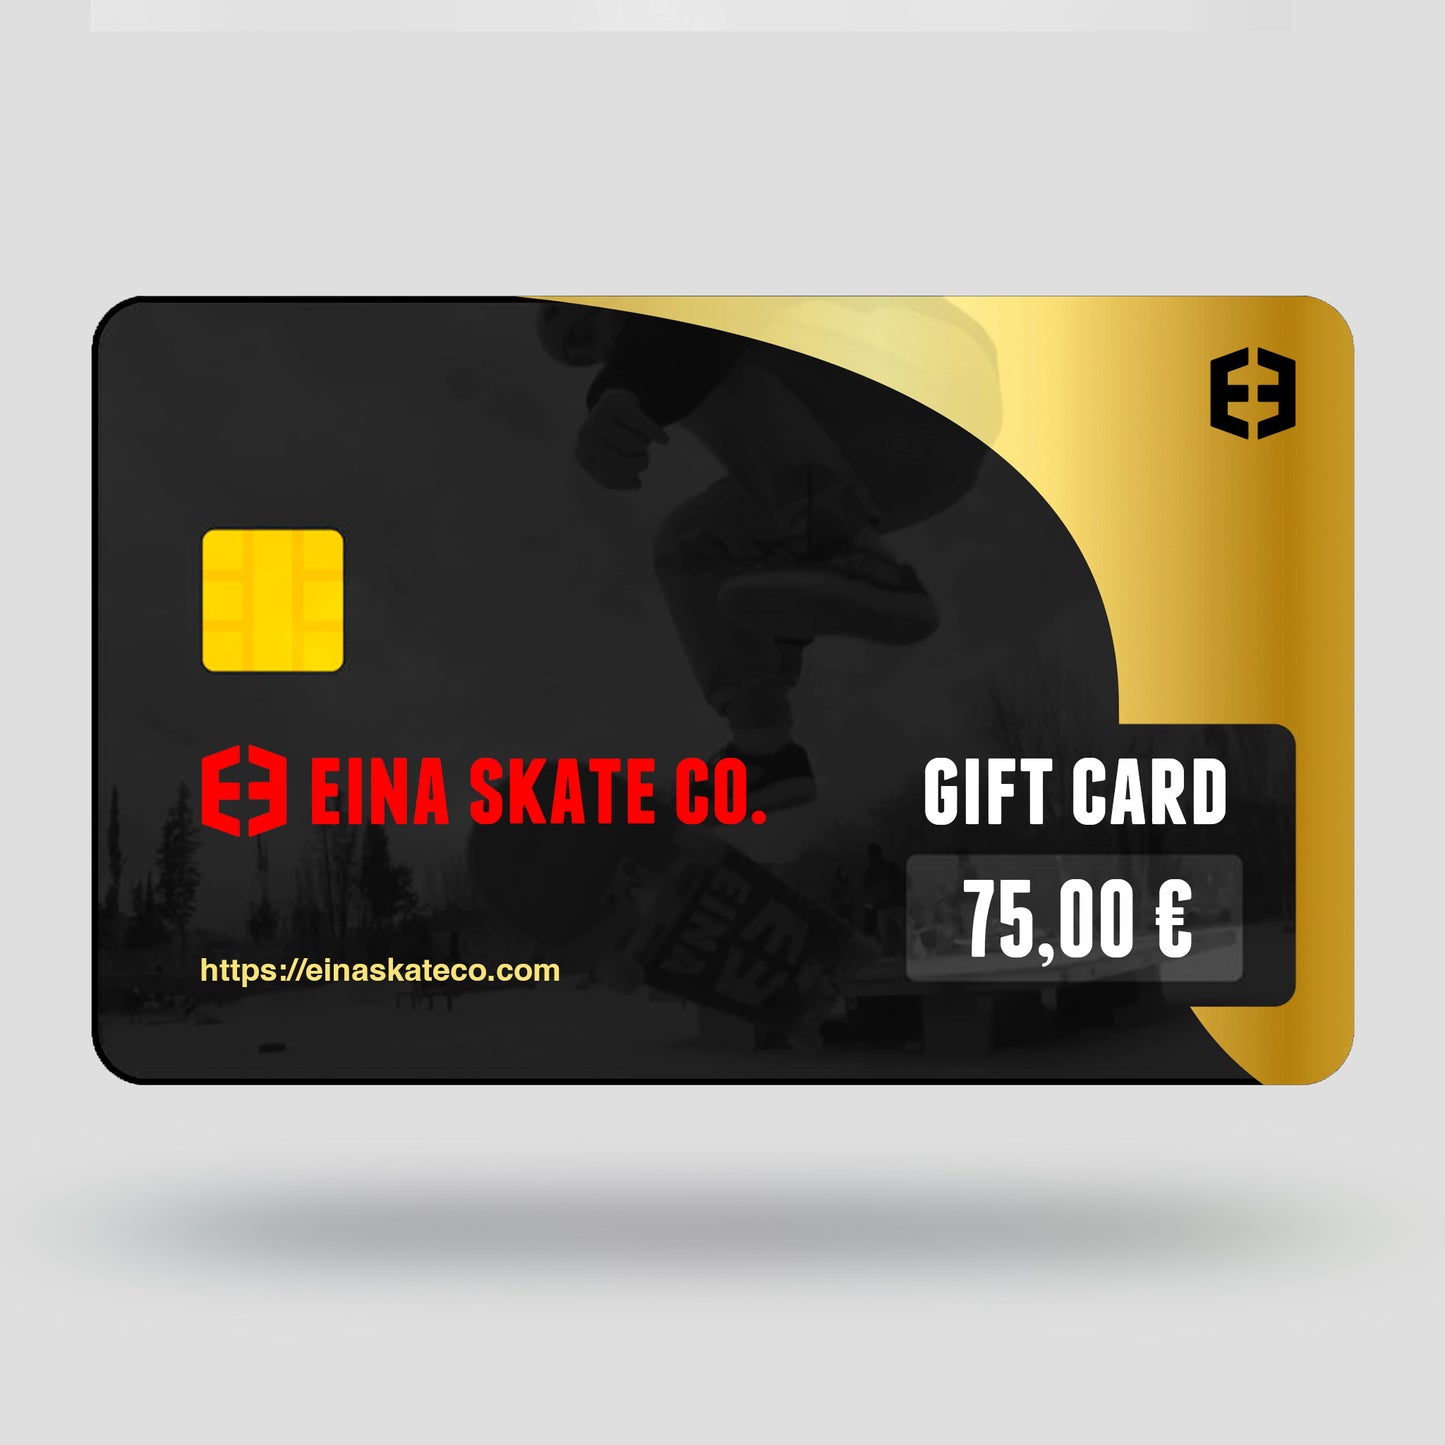 Eina skateboard company 75,00 € Gift card